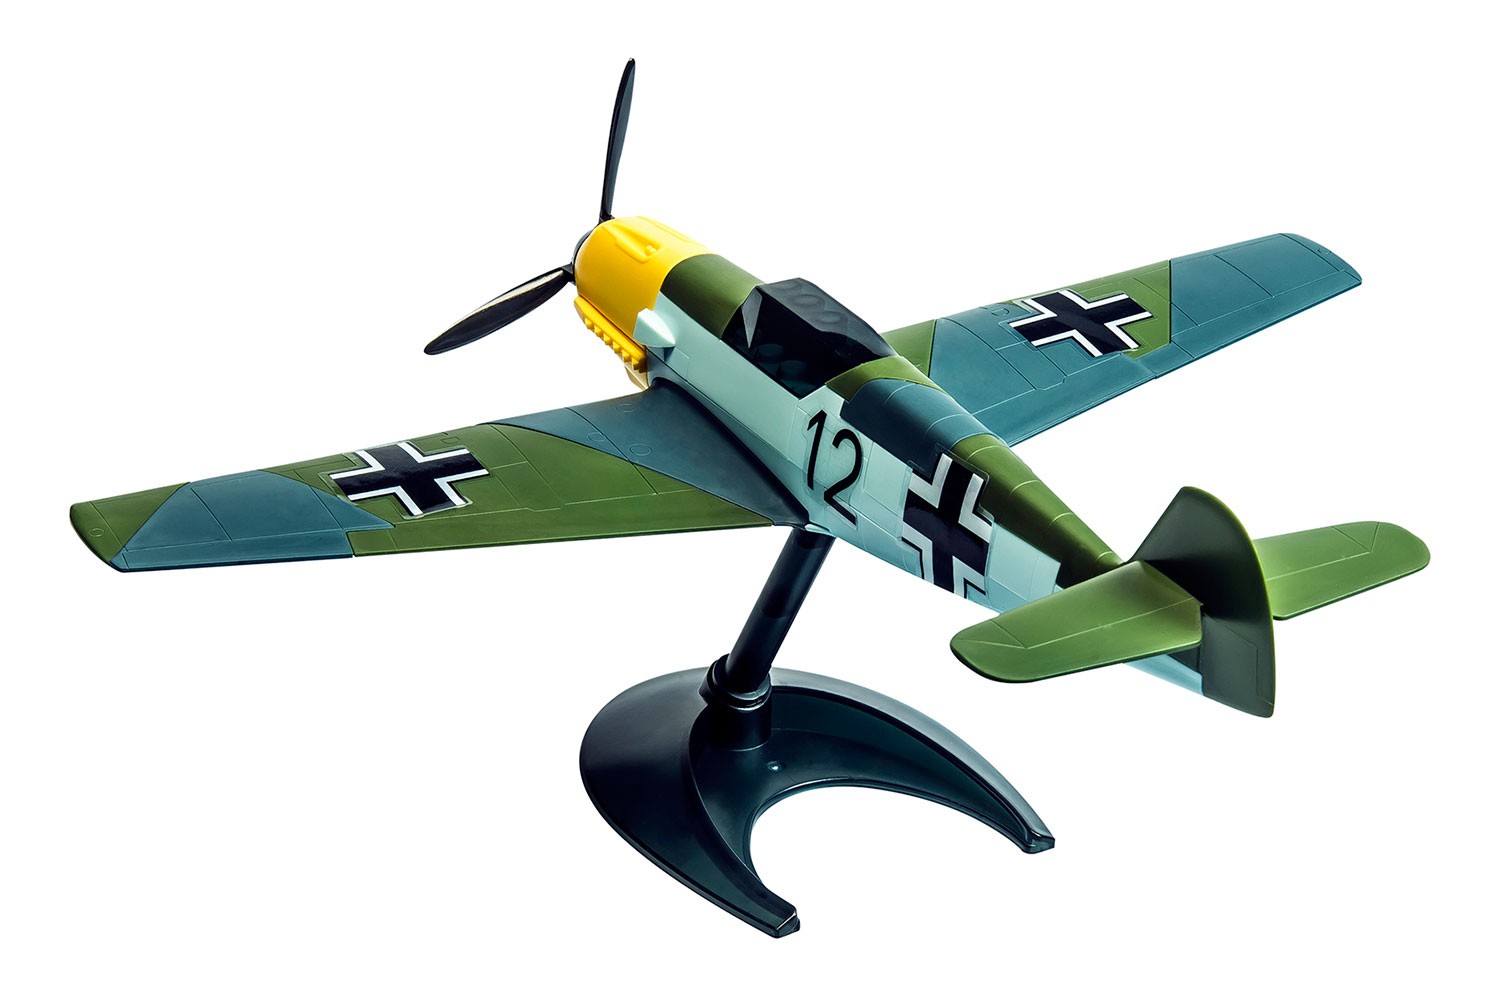 Airfix J6001 QUICK BUILD Messerschmitt Bf109